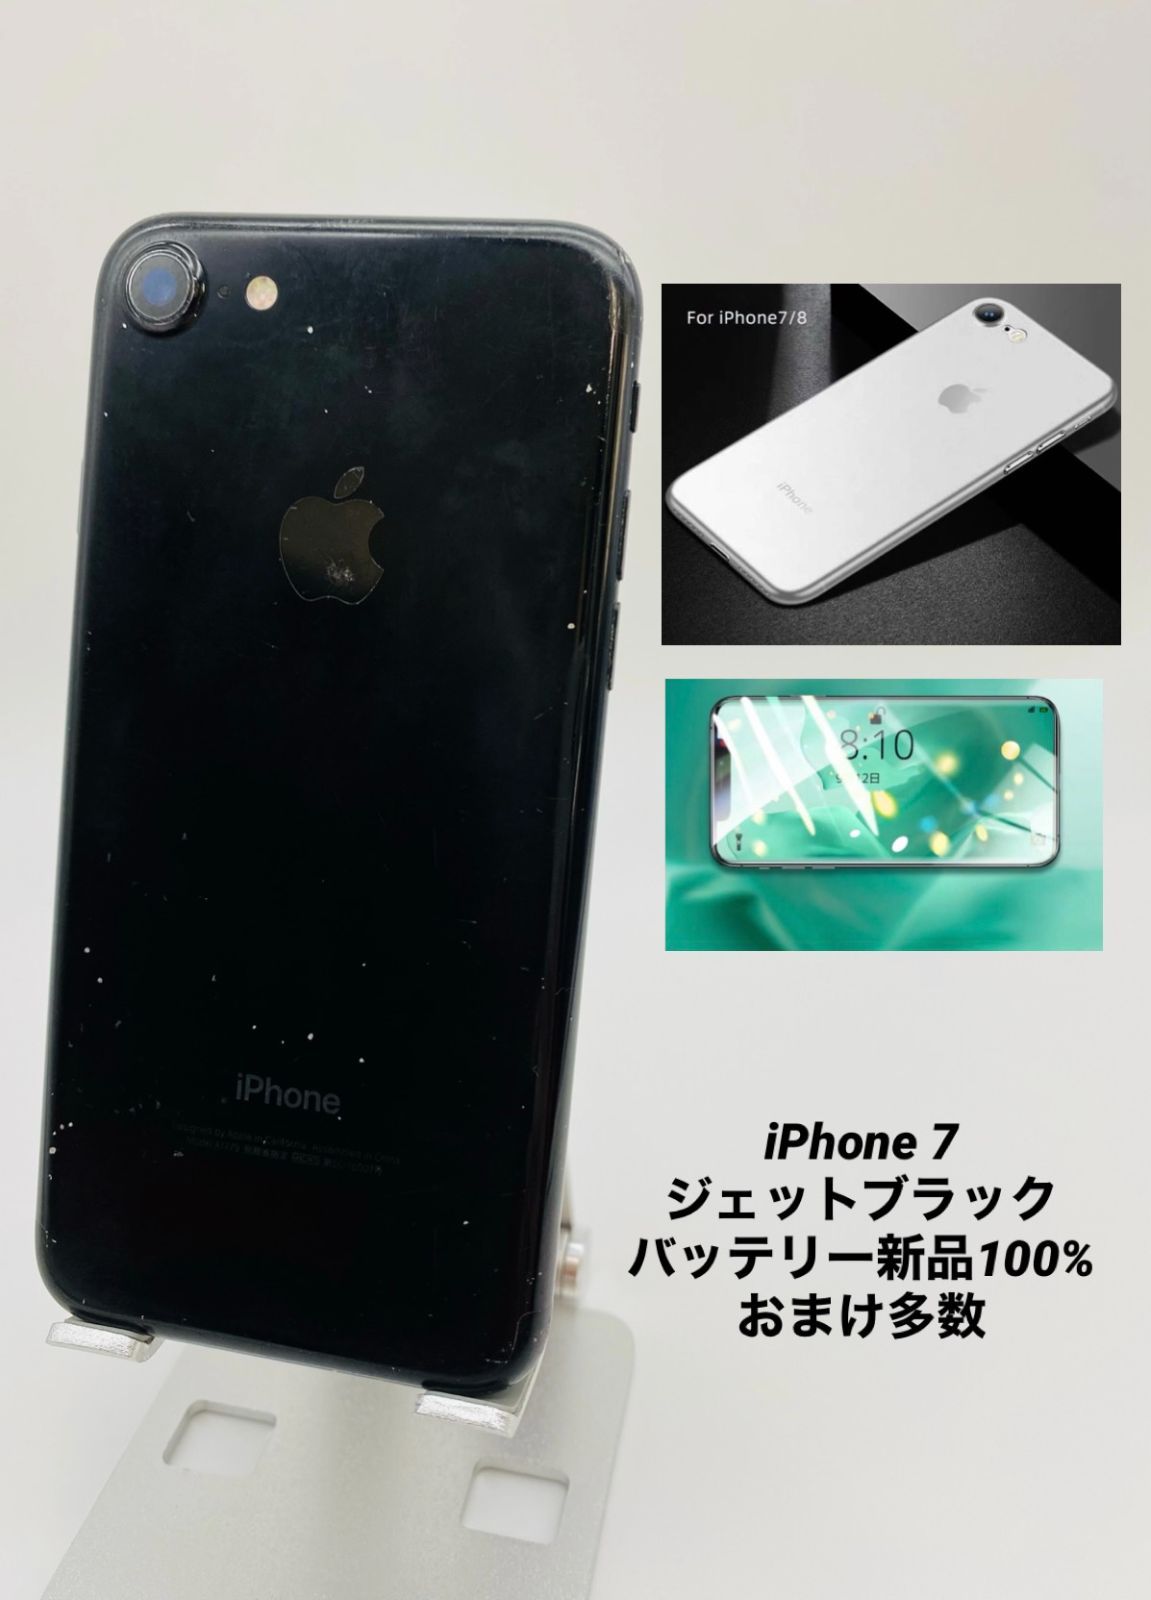 iPhone7 256GB ゴールド/シムフリー/大容量2300mAh 新品